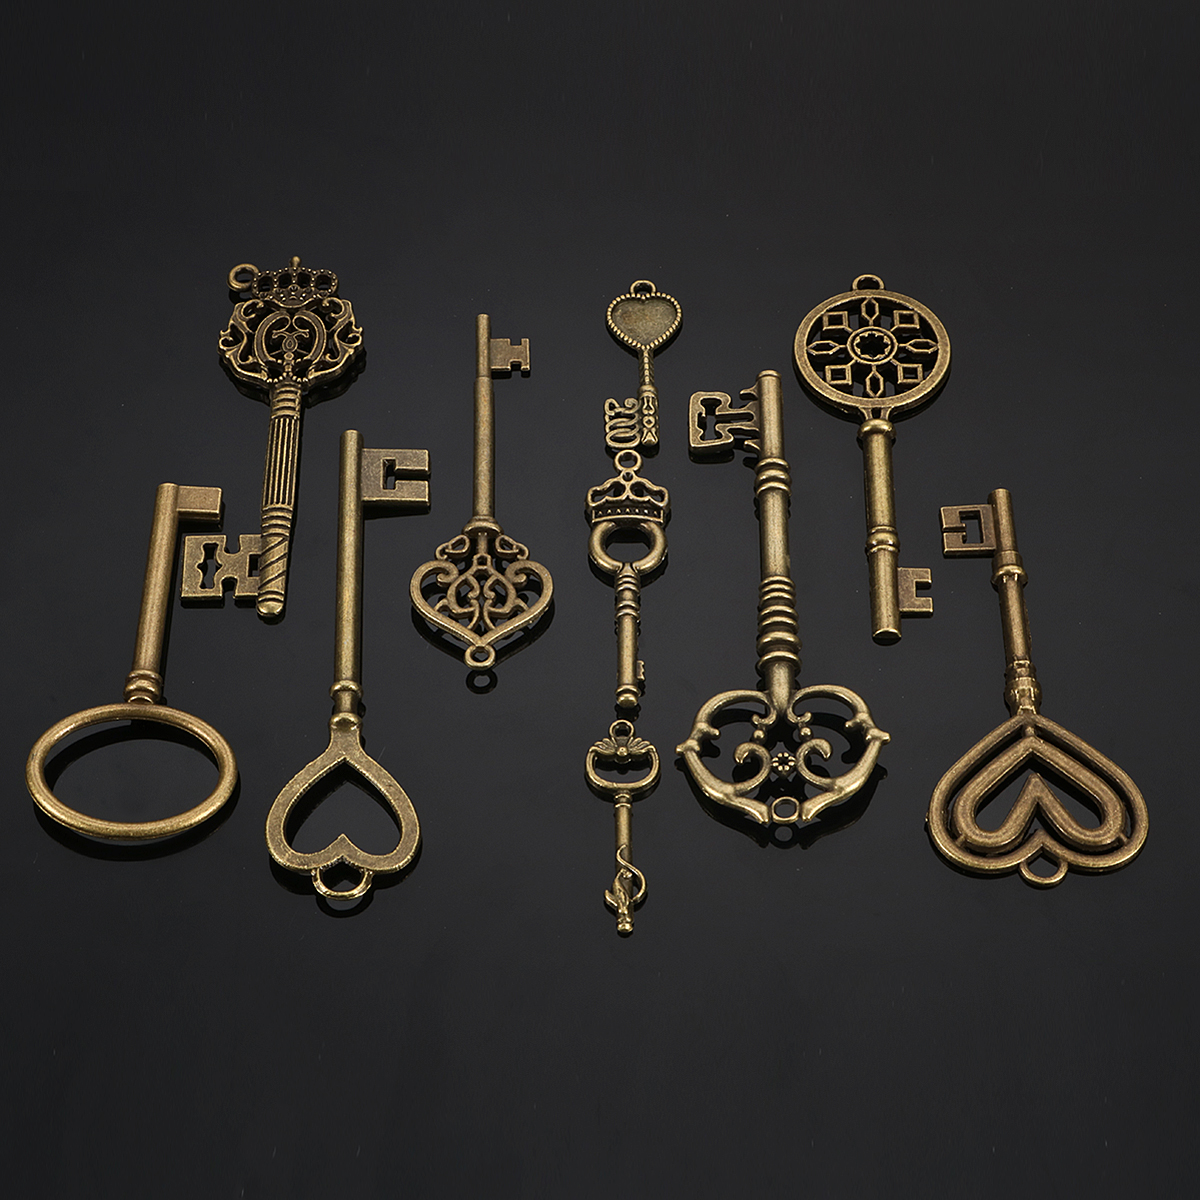 10Pcs Mixed Bronze Key Necklace Pendant Charm DIY